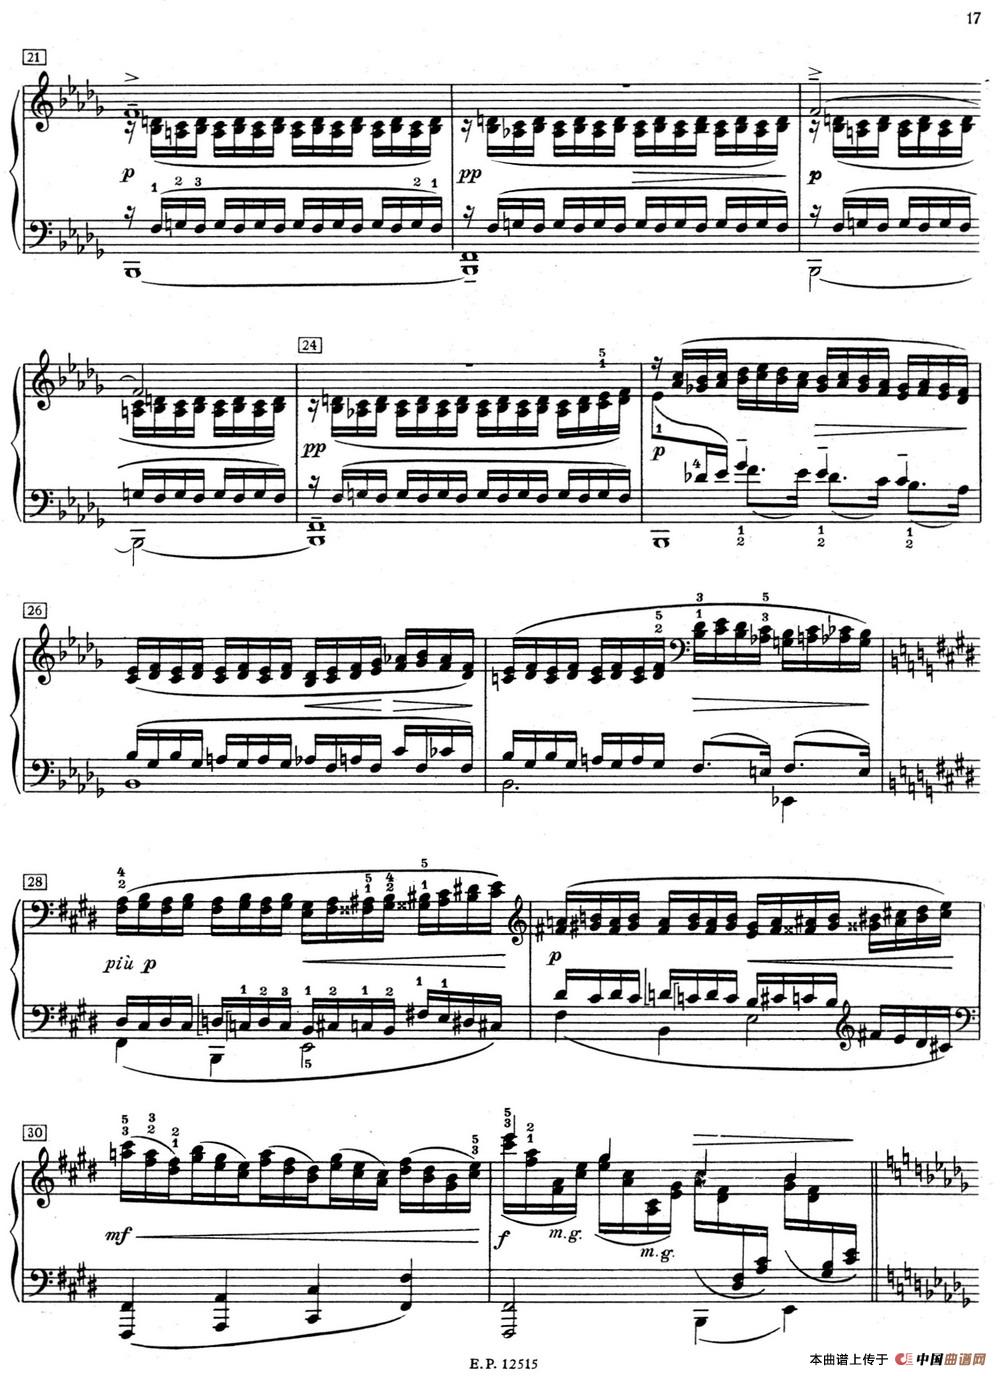 《德彪西12首钢琴练习曲》钢琴曲谱图分享